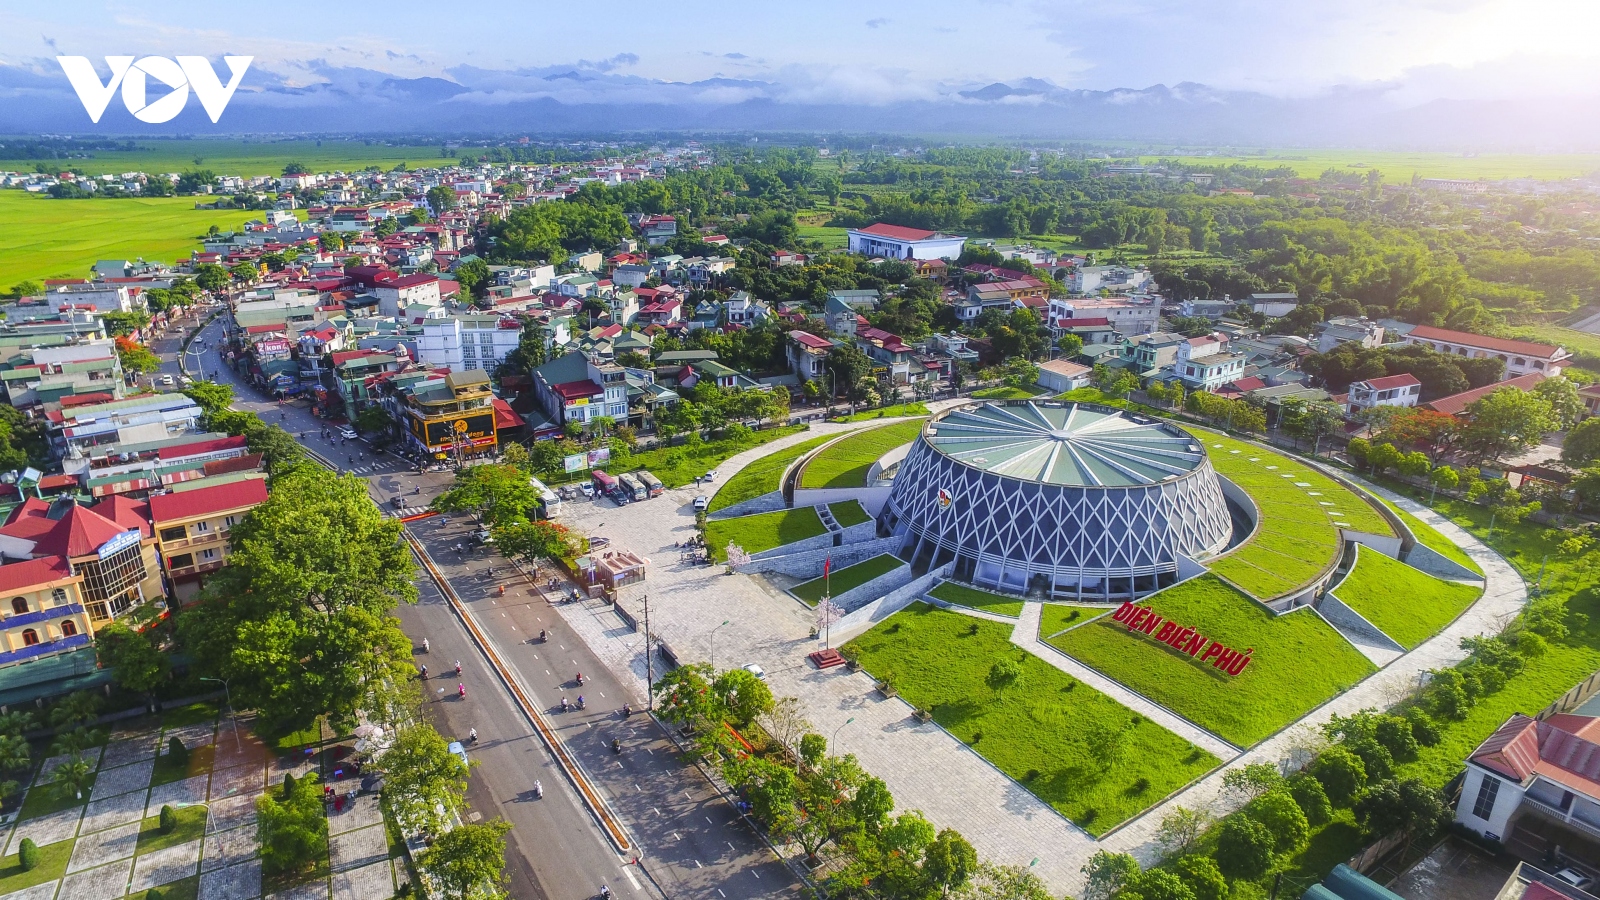 Bảo tàng Chiến thắng Điện Biên Phủ - "Điểm hẹn lịch sử" tại Điện Biên